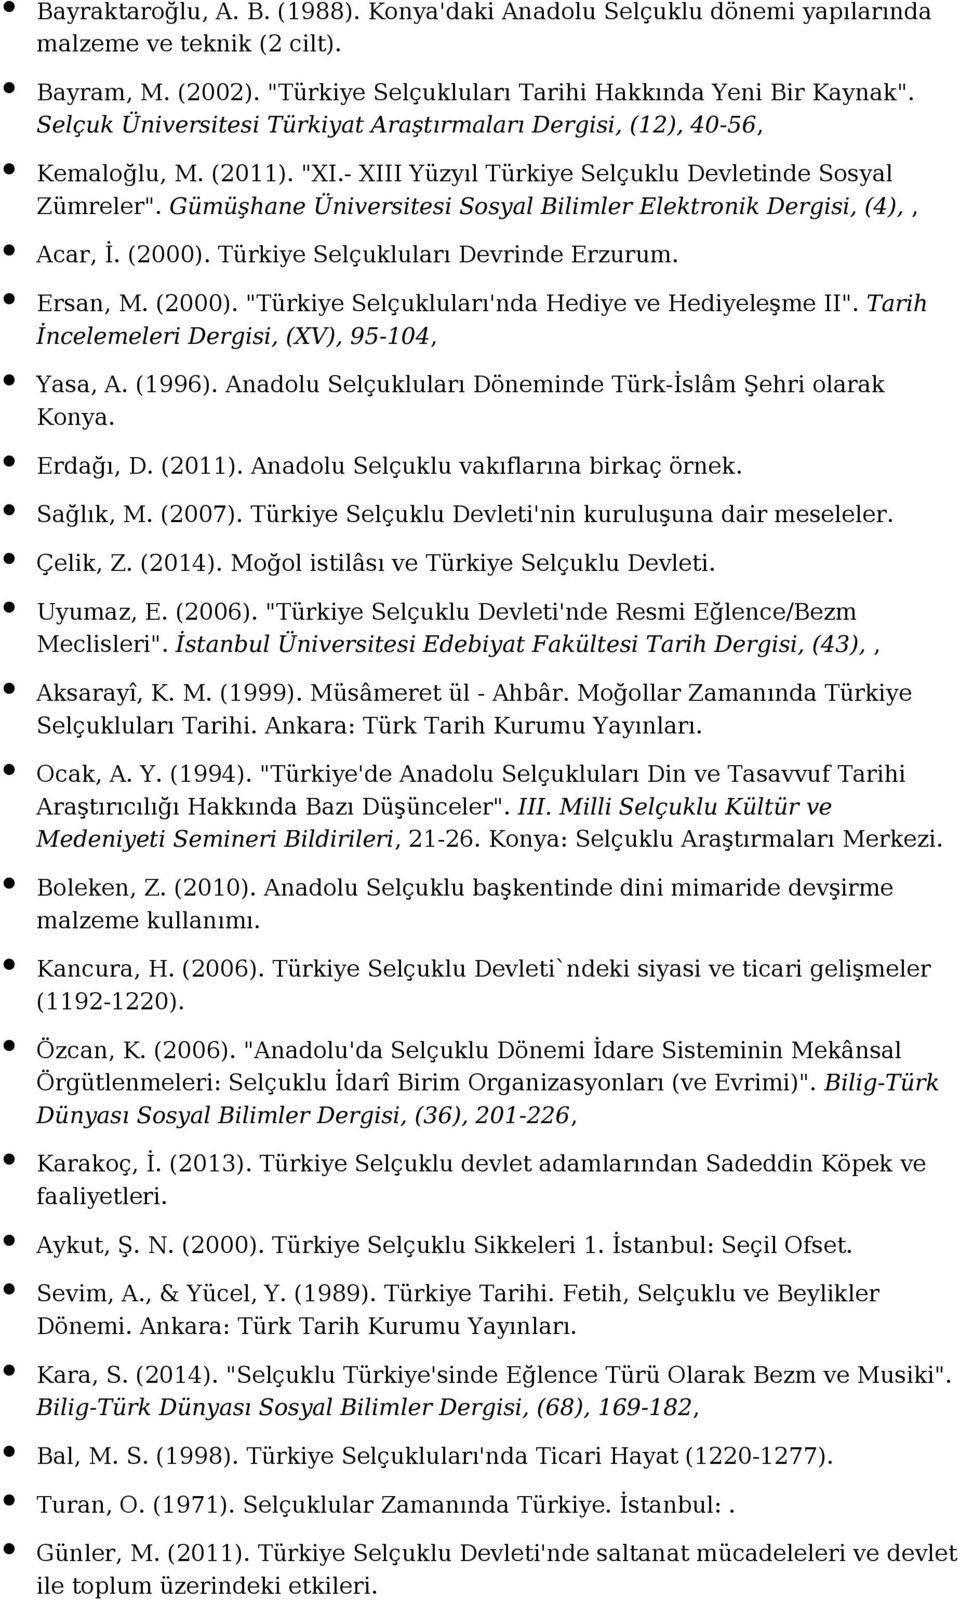 Gümüşhane Üniversitesi Sosyal Bilimler Elektronik Dergisi, (4),, Acar, İ. (2000). Türkiye Selçukluları Devrinde Erzurum. Ersan, M. (2000). "Türkiye Selçukluları'nda Hediye ve Hediyeleşme II".